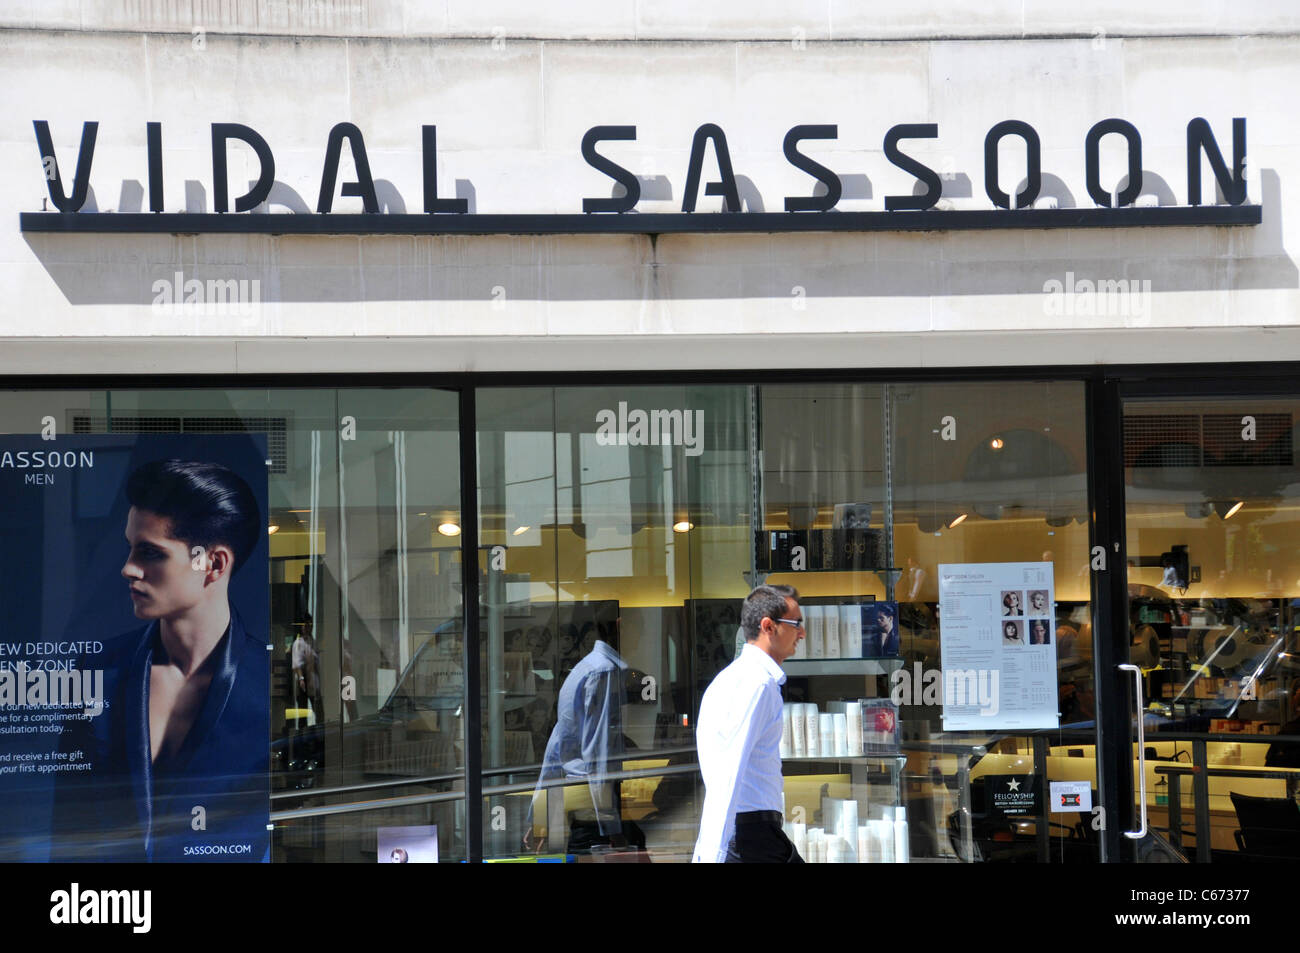 Vidal Sassoon Salon London Stockfoto